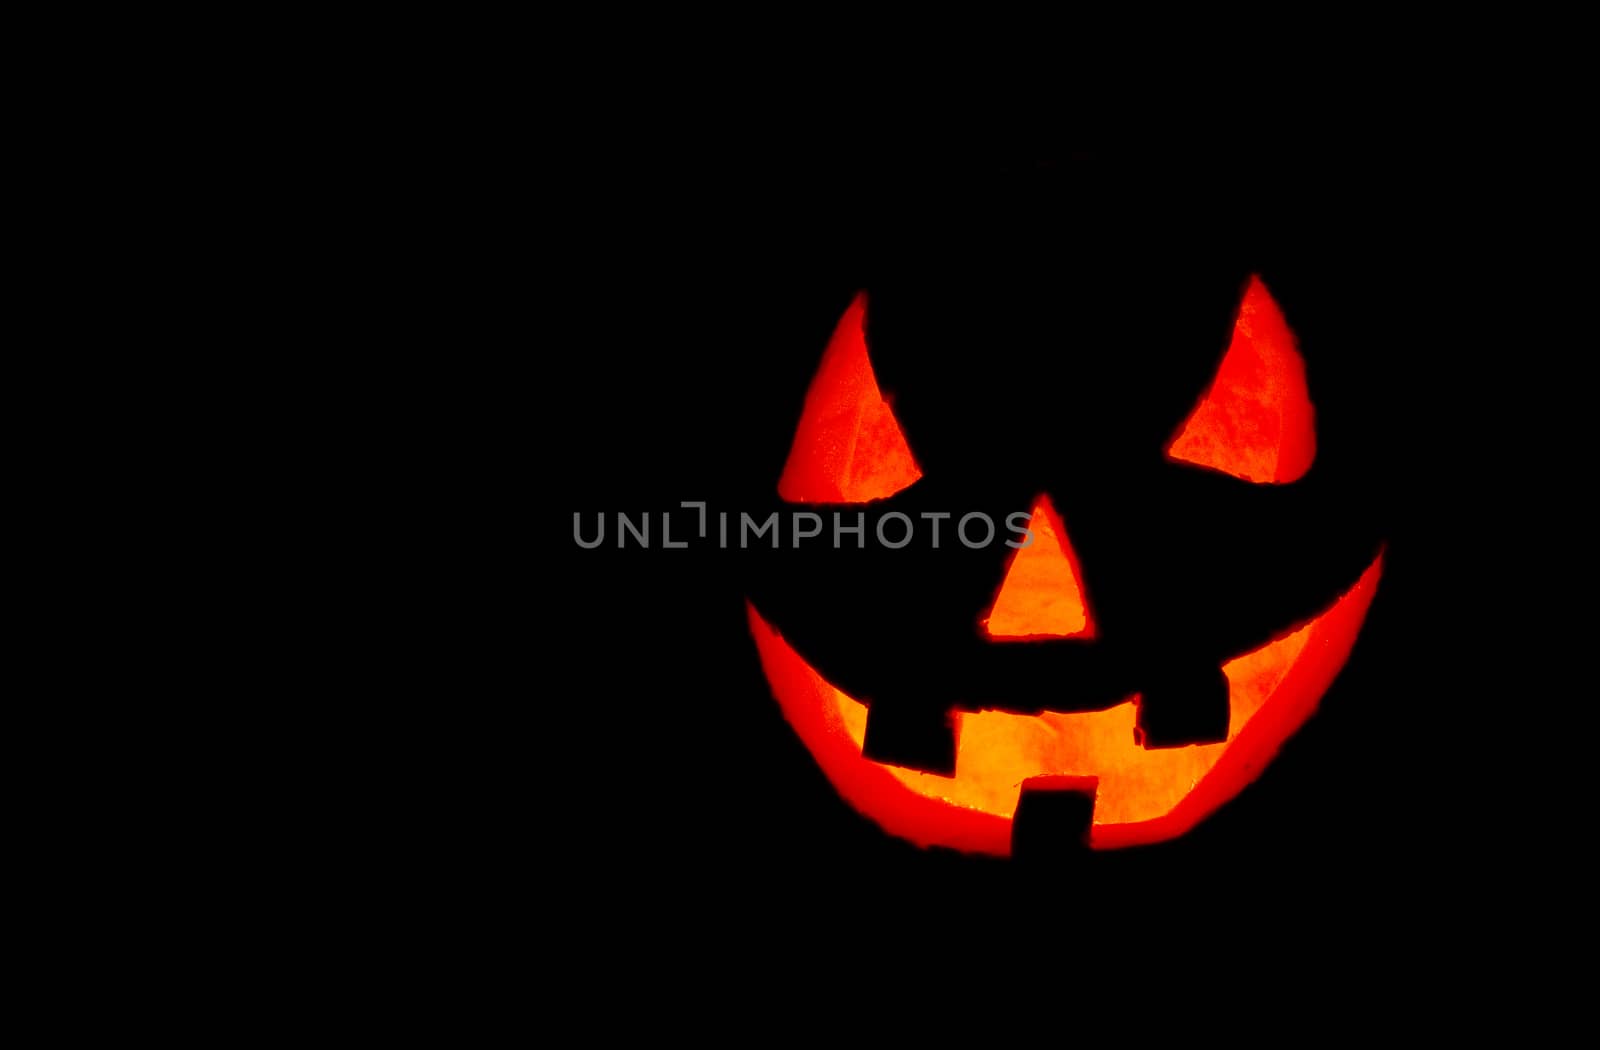 Halloween pumpkin by adrenalina